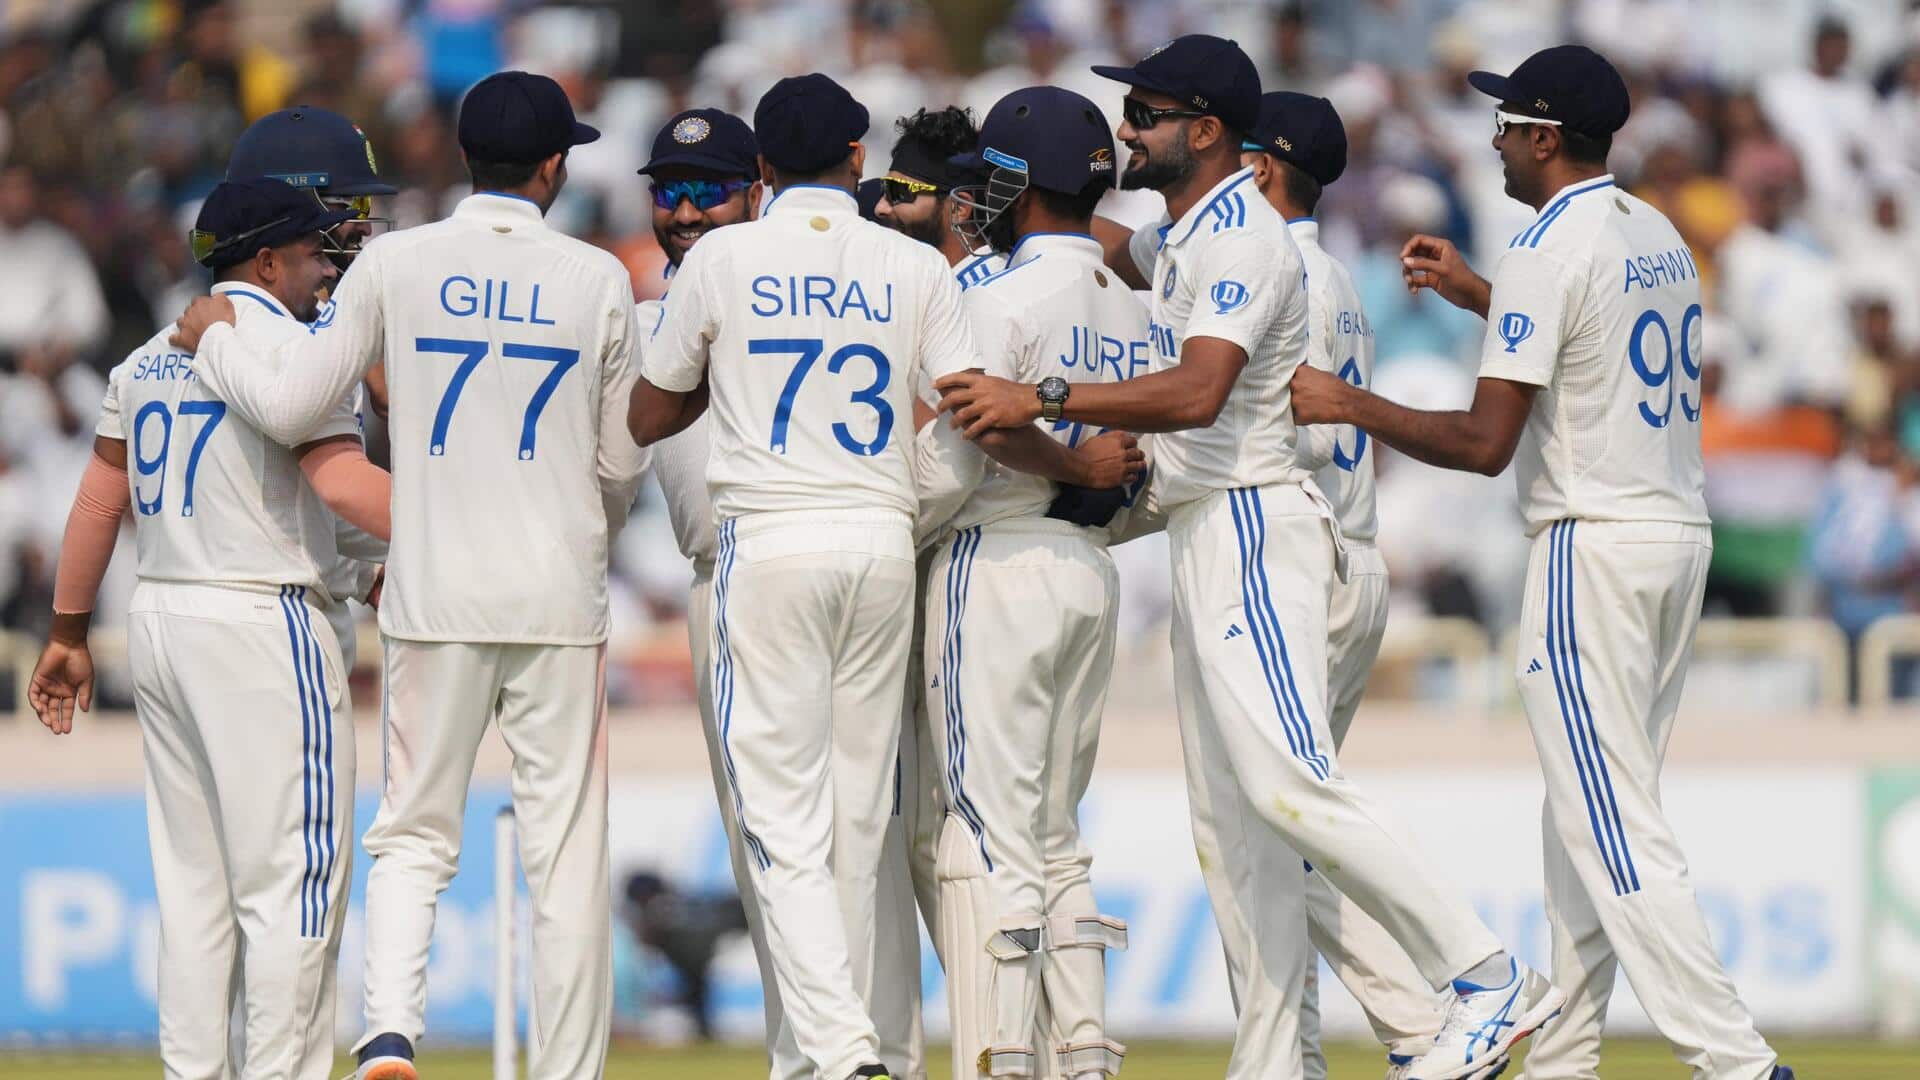 ऑस्ट्रेलिया ने पहले टेस्ट में न्यूजीलैंड को हराया, WTC की तालिका में शीर्ष पर पहुंचा भारत